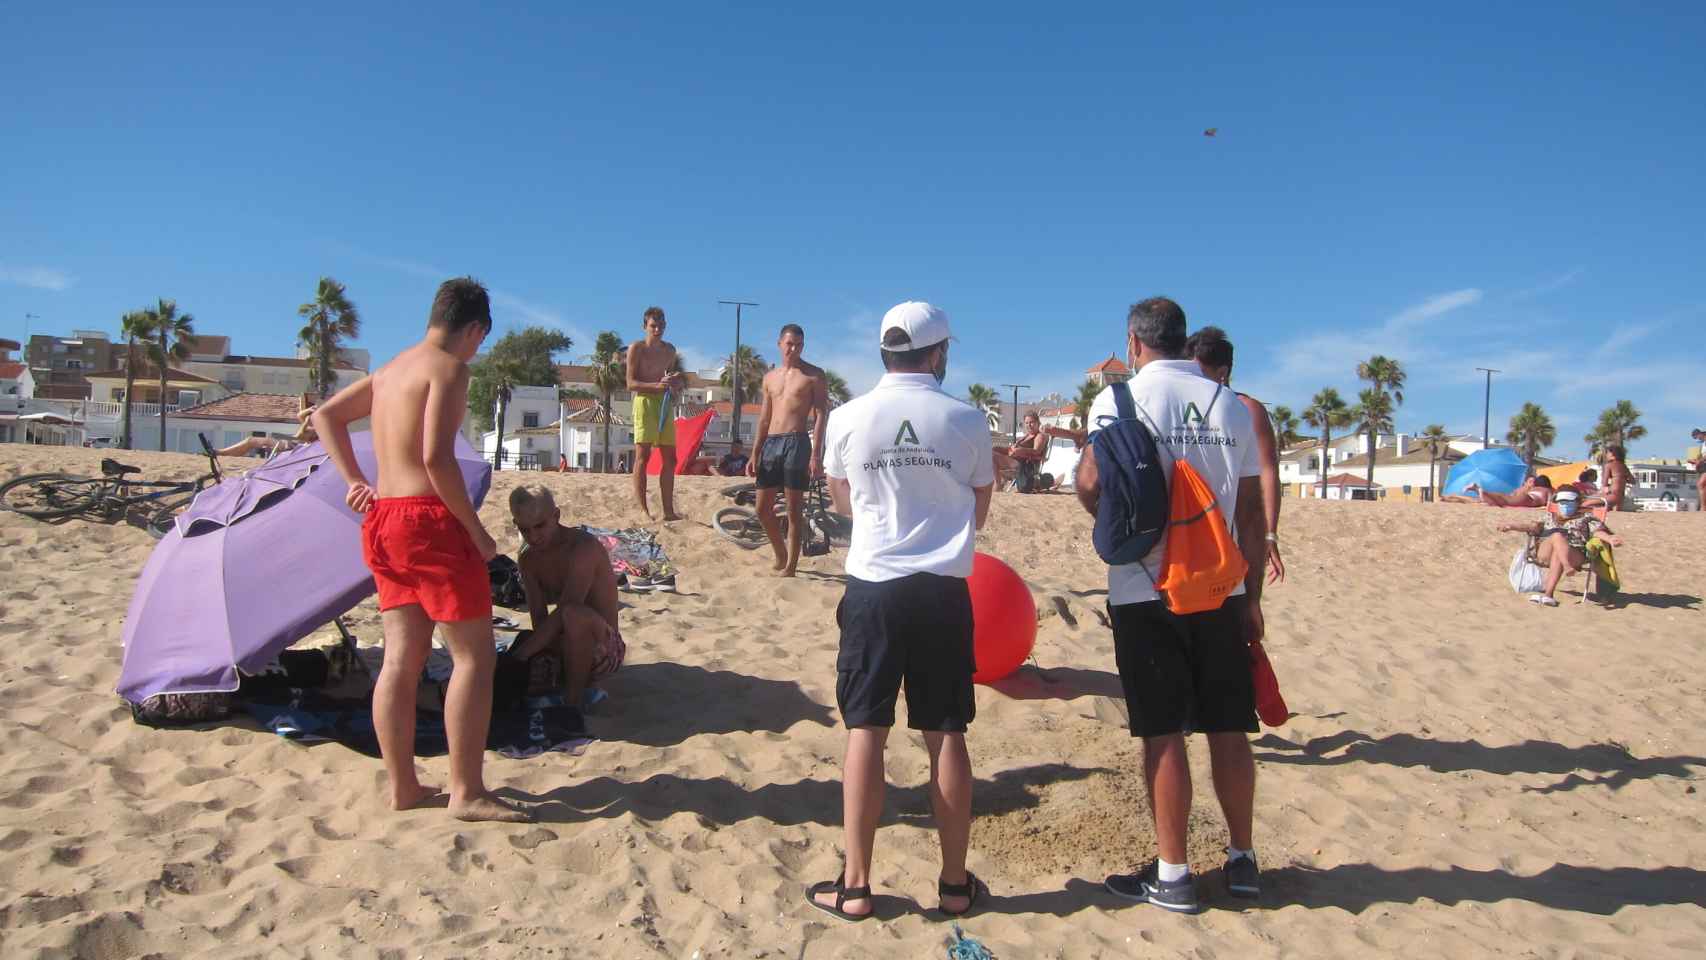 Los vigilantes de la playa recomiendan a unos jóvenes que no jueguen con la pelota.